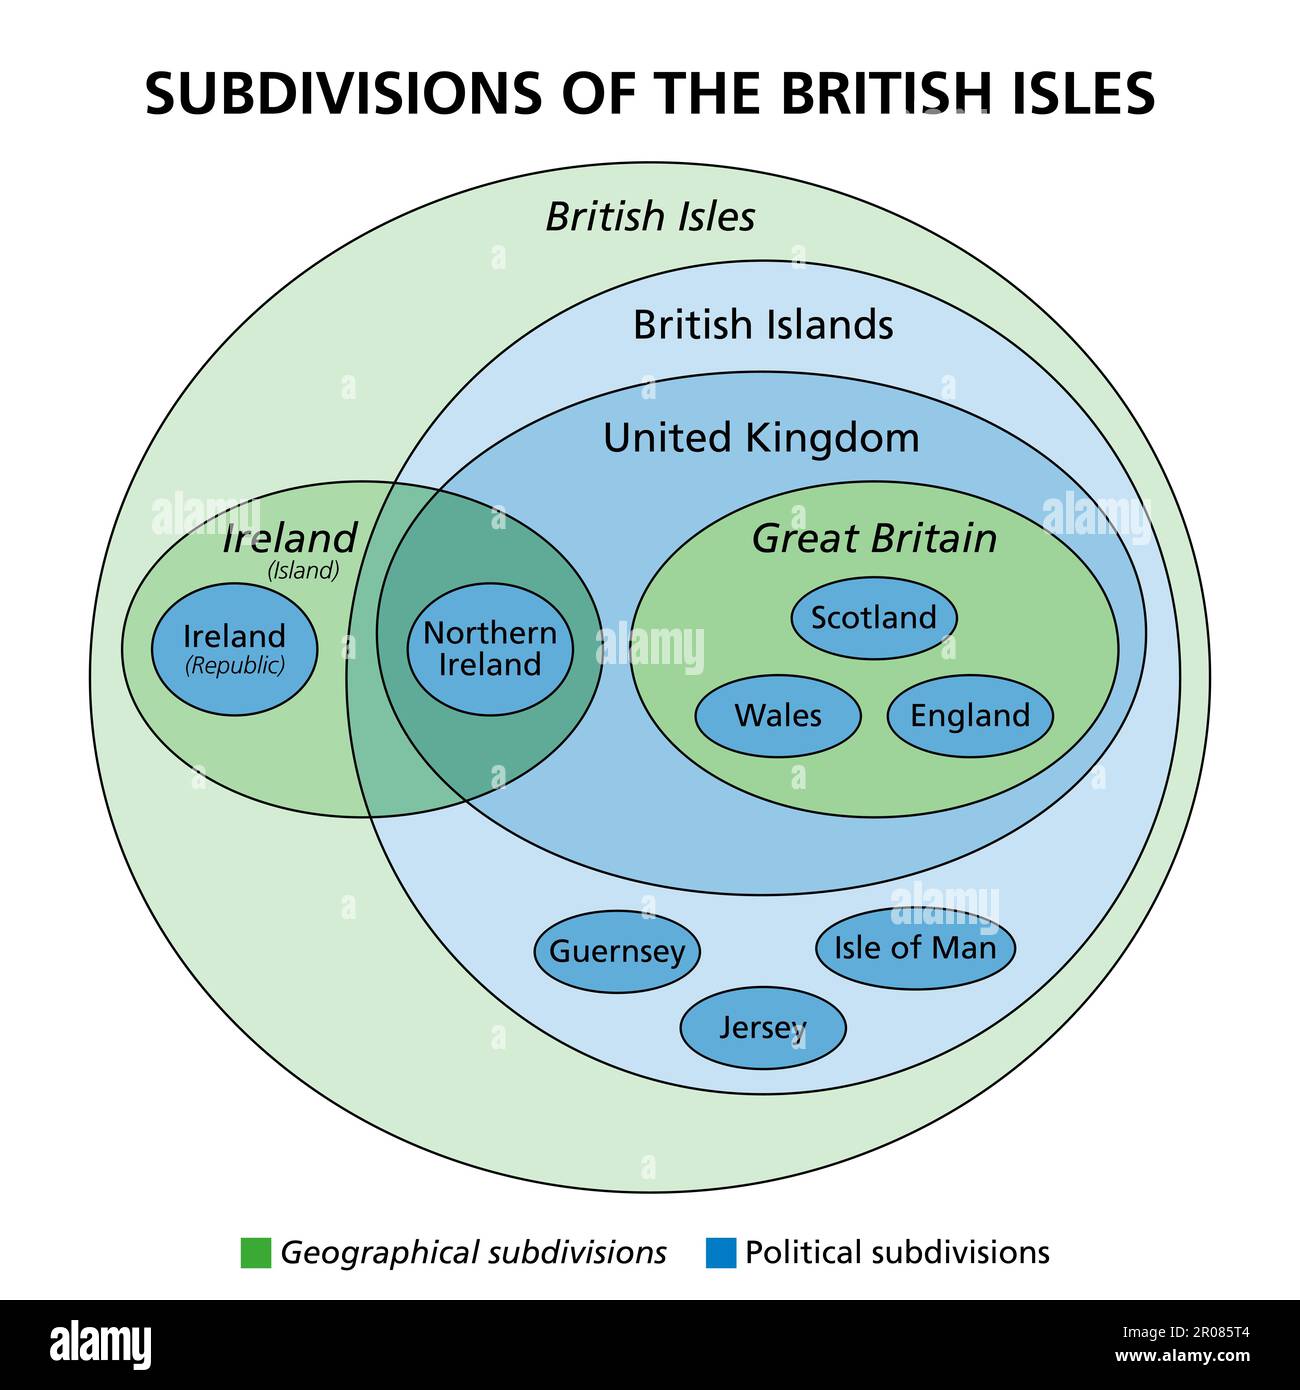 Unterteilungen der britischen Inseln, Euler-Diagramm. Geografische (grüne) und politische (blaue) Untergliederung mit den souveränen Staaten Irland und Vereinigtes Königreich. Stockfoto